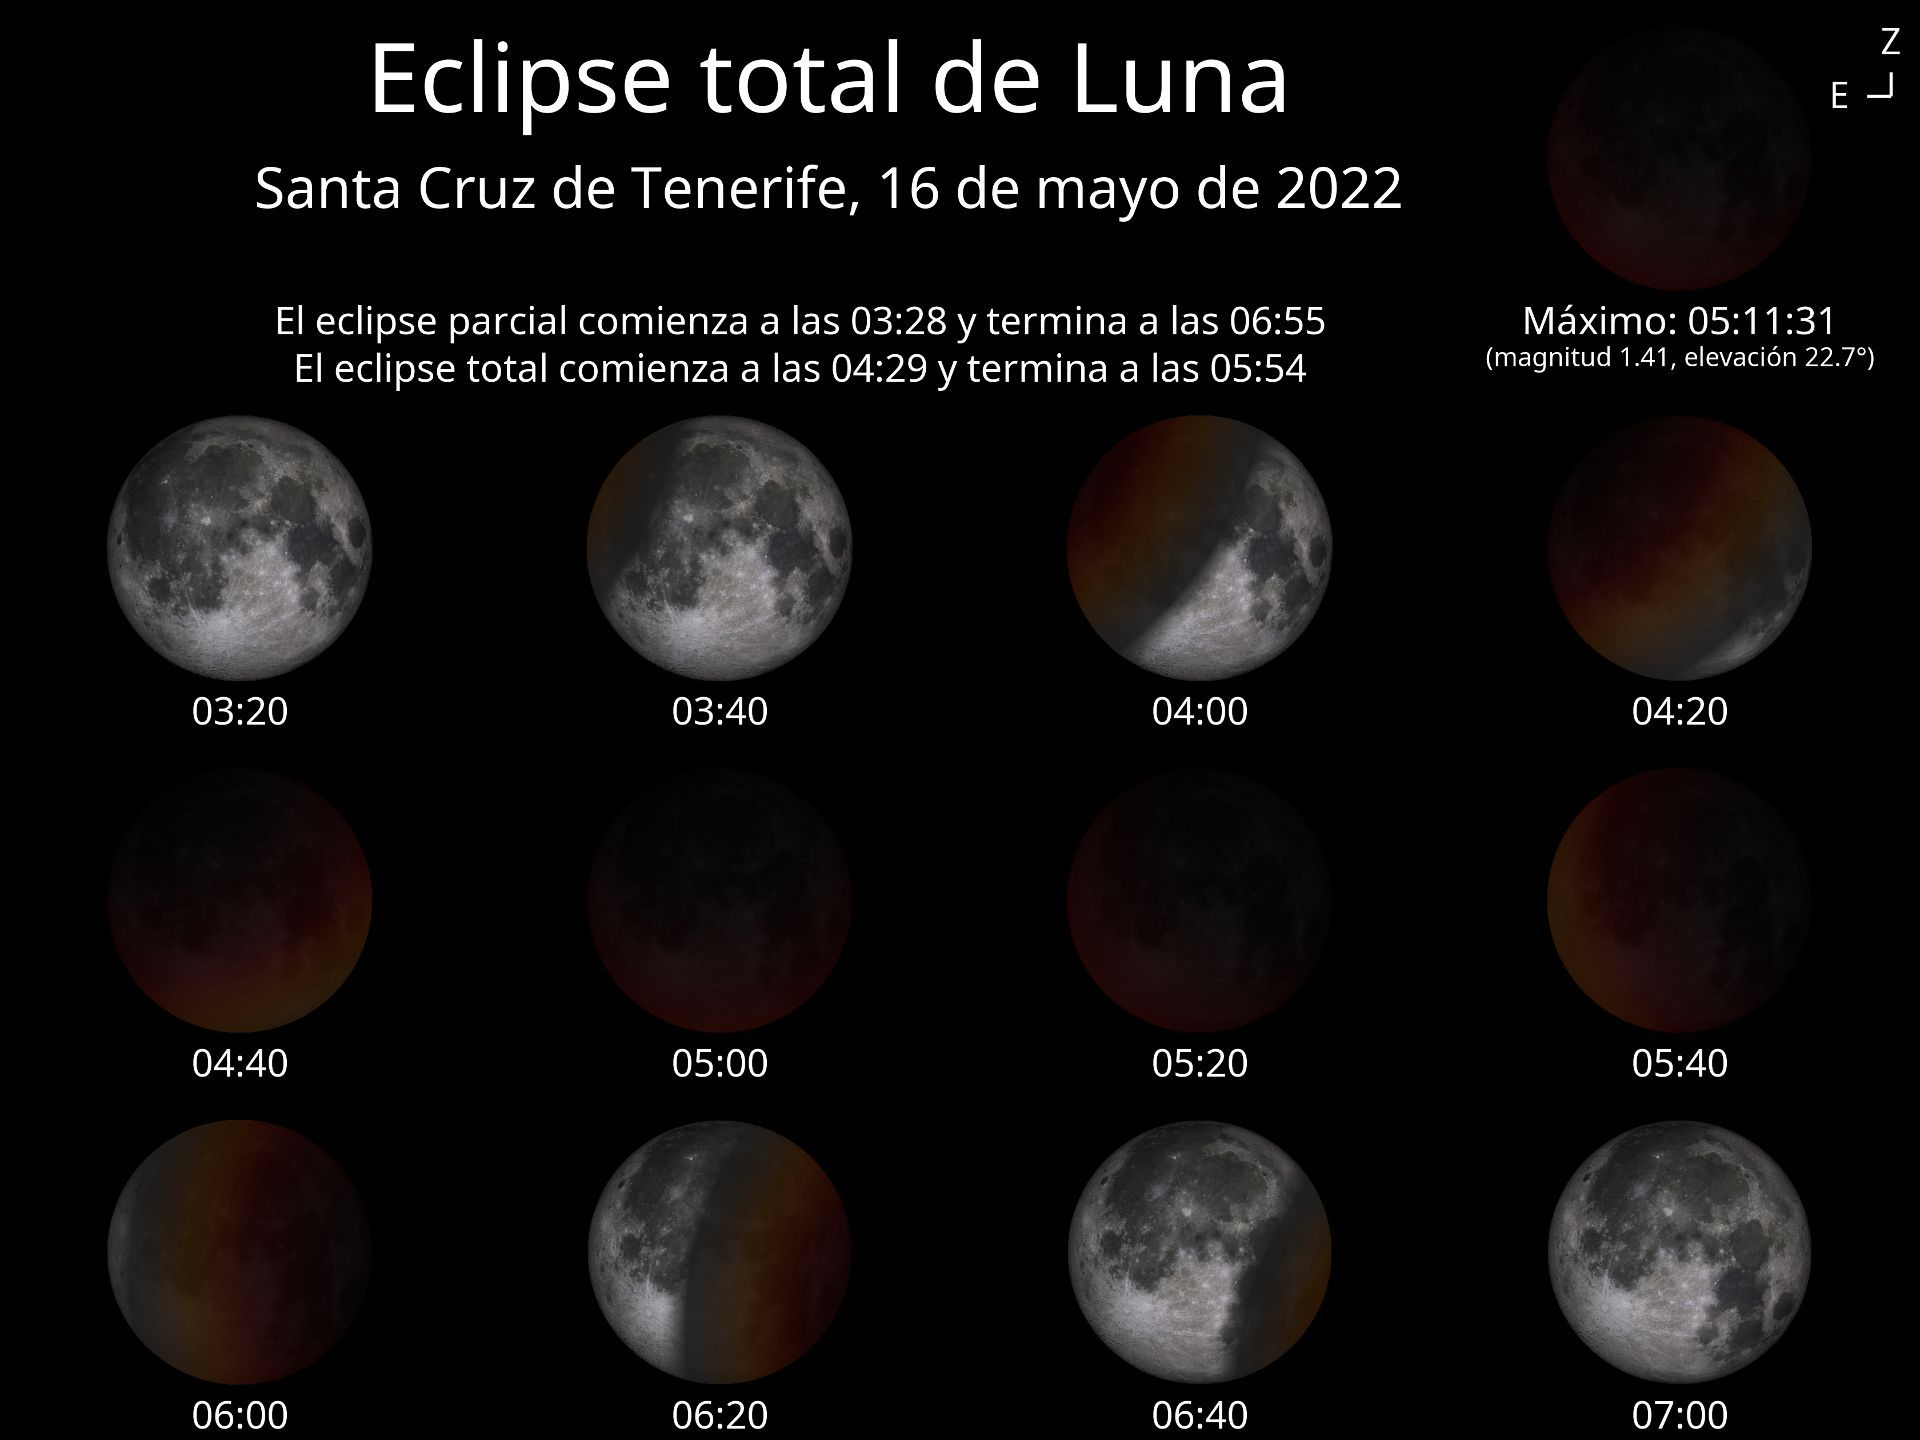 Eclipse total de luna del próximo 16 de mayo que será visible en Santa Cruz de Tenerife.